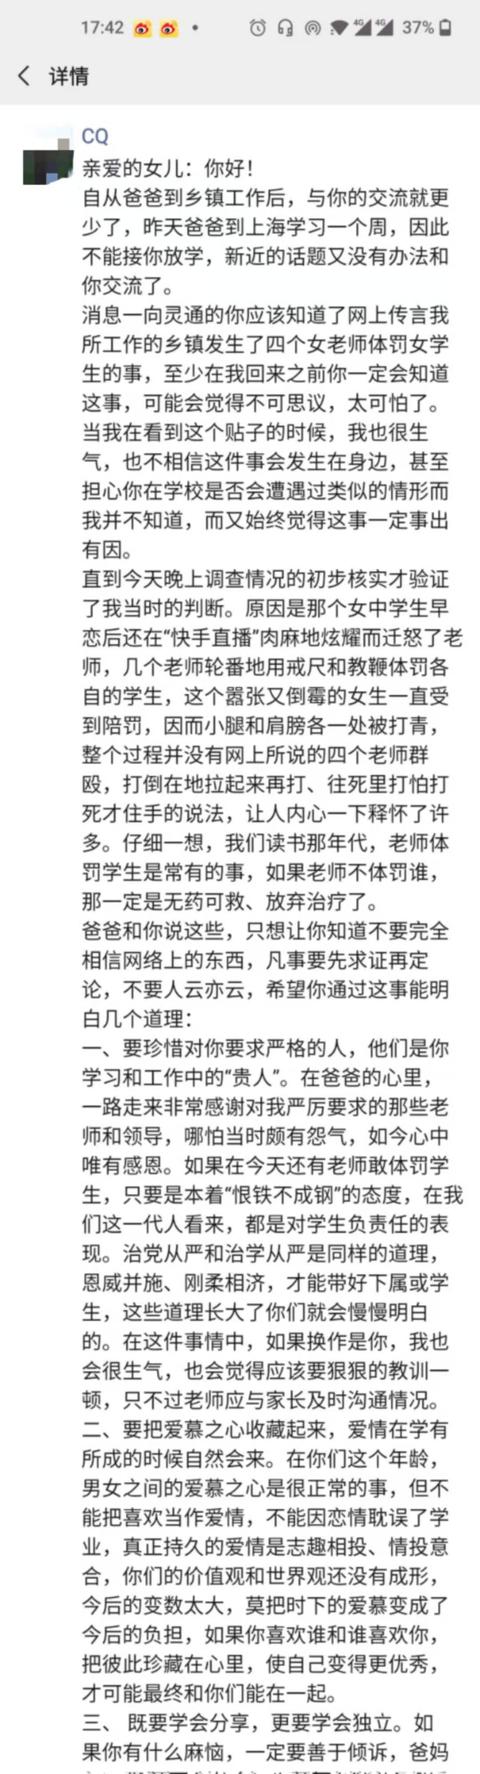 初三女生早恋，被4名老师轮番殴打，县领导发文称她“肉麻地炫耀”，随后登门道歉